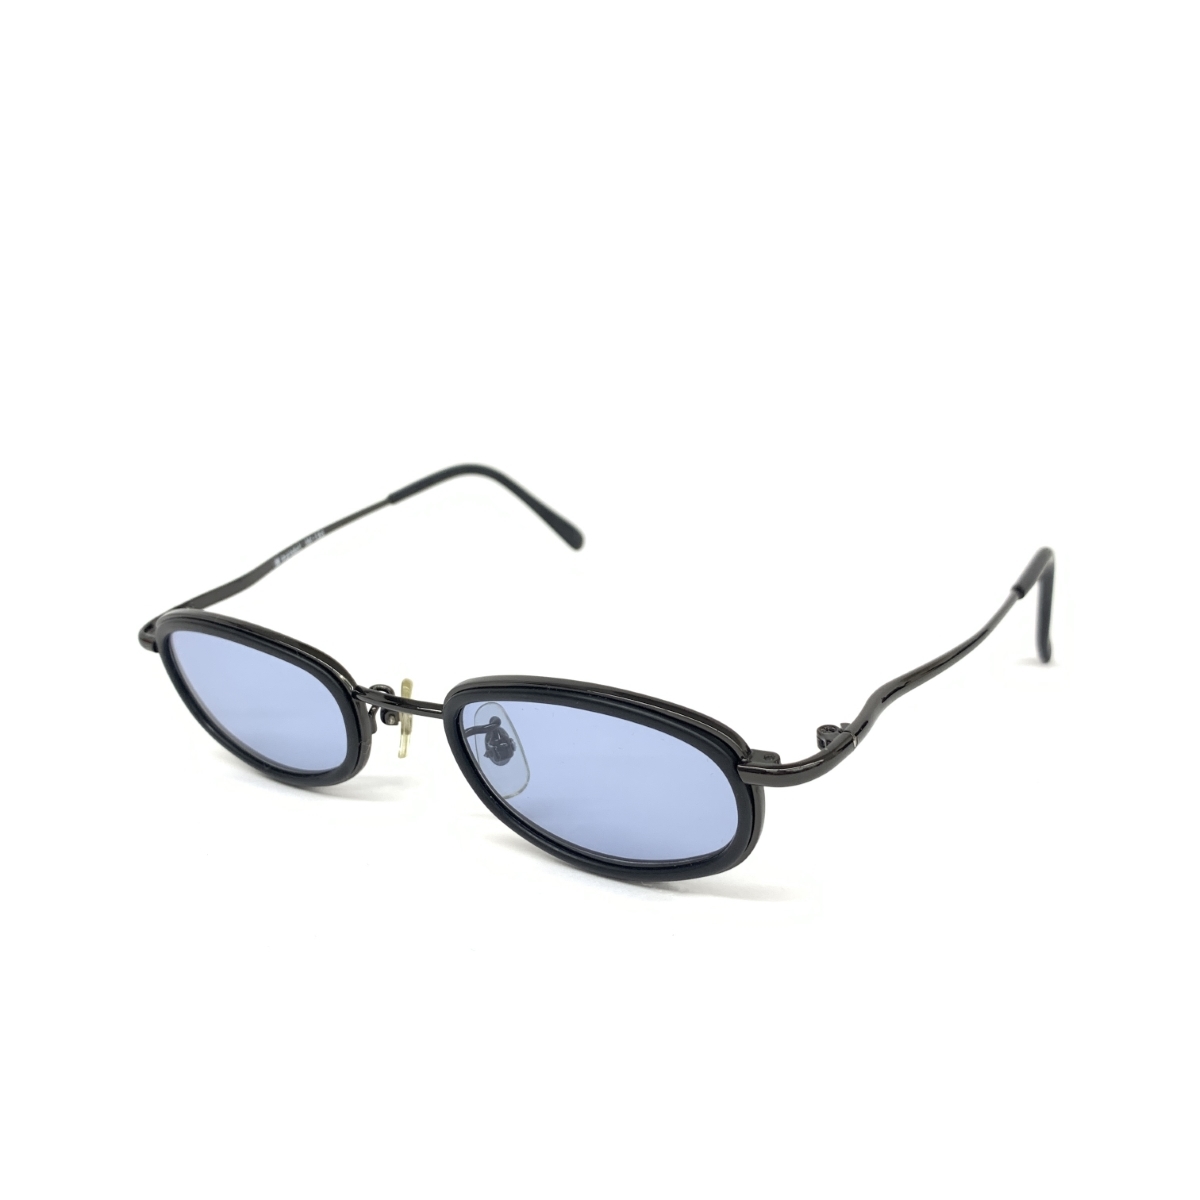 良好◆im product アイムプロダクト サングラス◆ ブルー メンズ メガネ 眼鏡 サングラス sunglasses 服飾小物